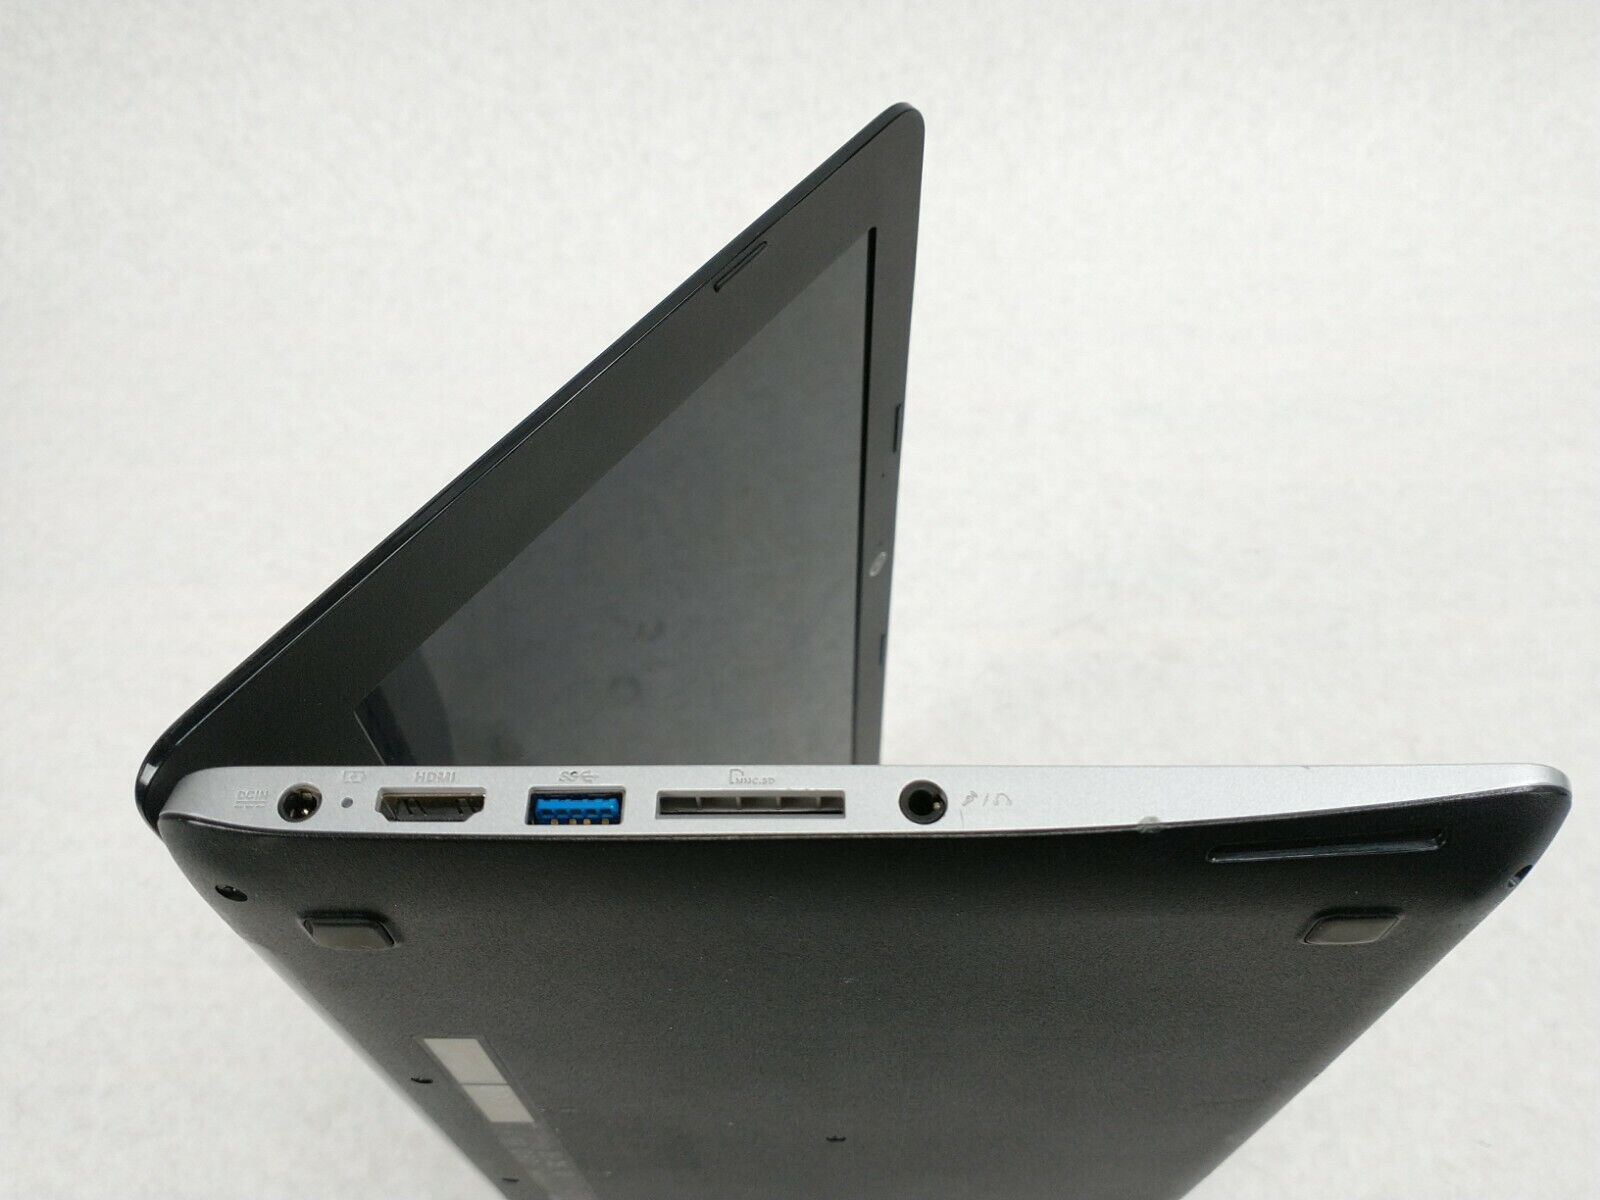 Asus Chromebook C200MA-EDU Laptop Computer Chrome OS 11.6" 2GB 16GB Webcam